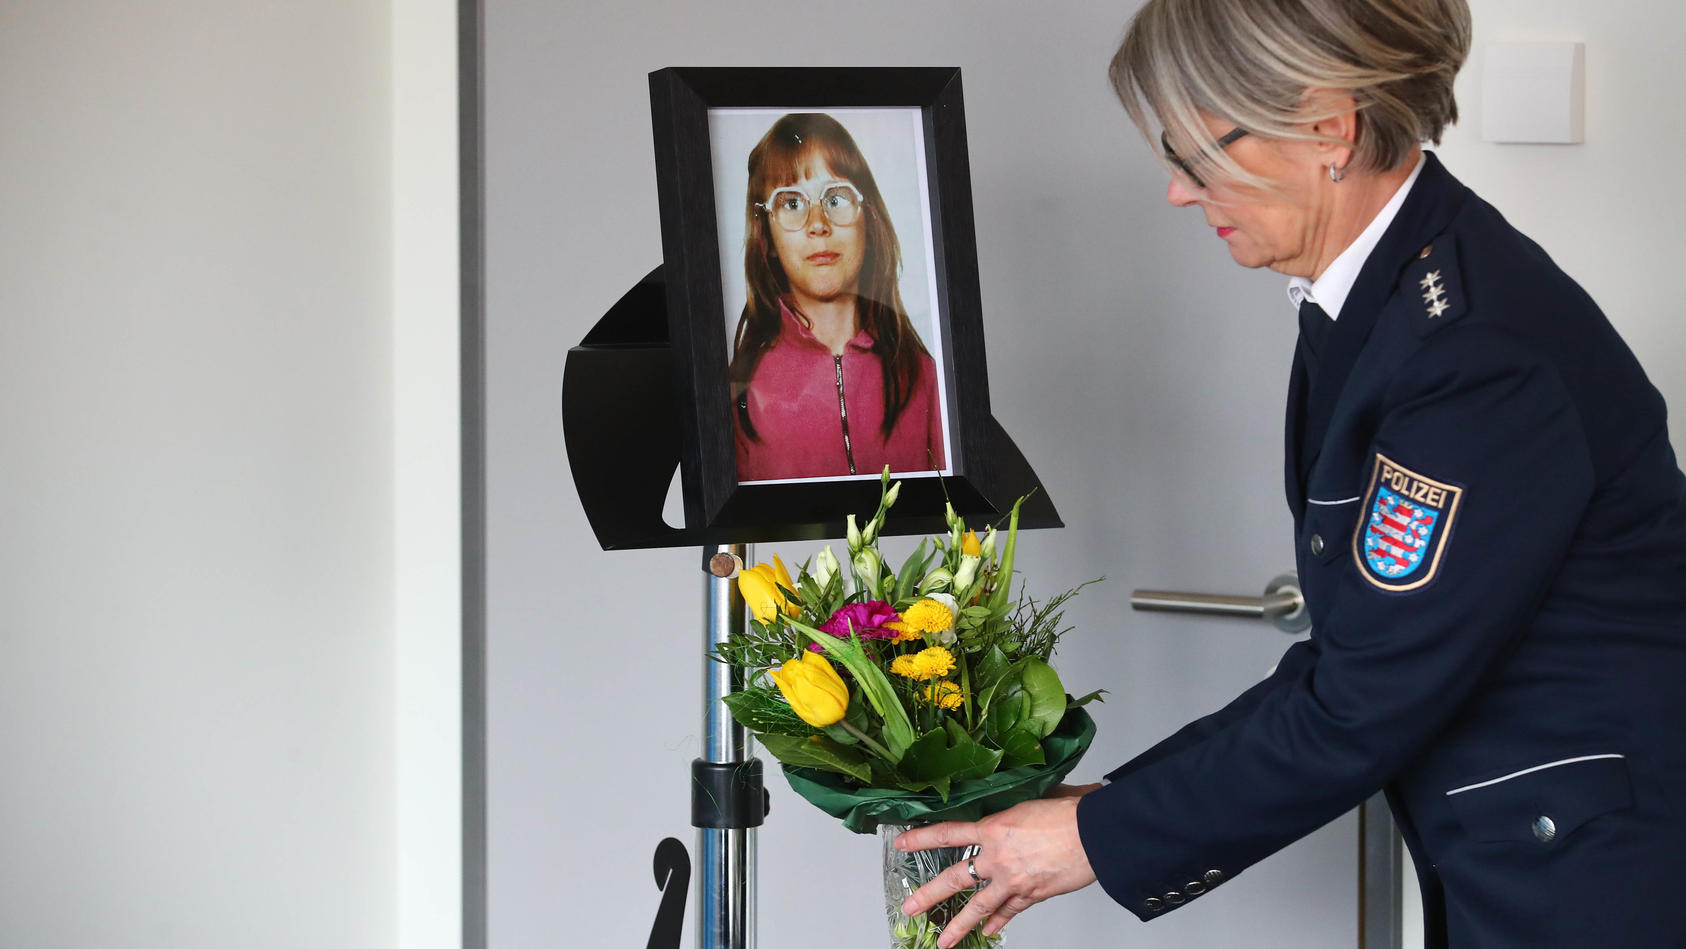 Thüringen, Jena: Eine Polizeibeamtin der Polizei Jena stellt einen Blumenstrauss unter das Foto der ermordeten Stephanie Drews